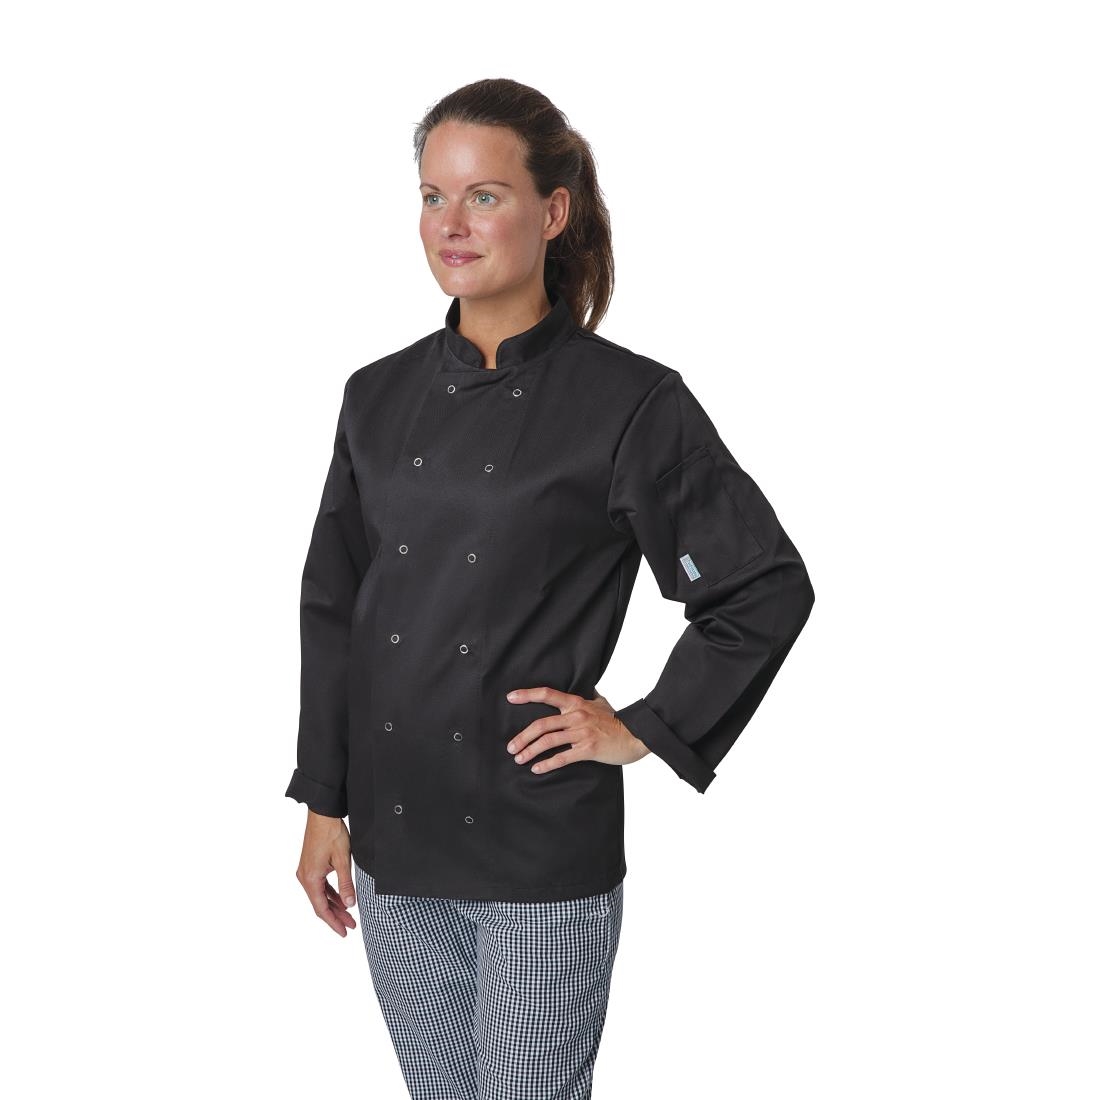 Whites Vegas Unisex Chefs Jacket Long Sleeve Black 5XL